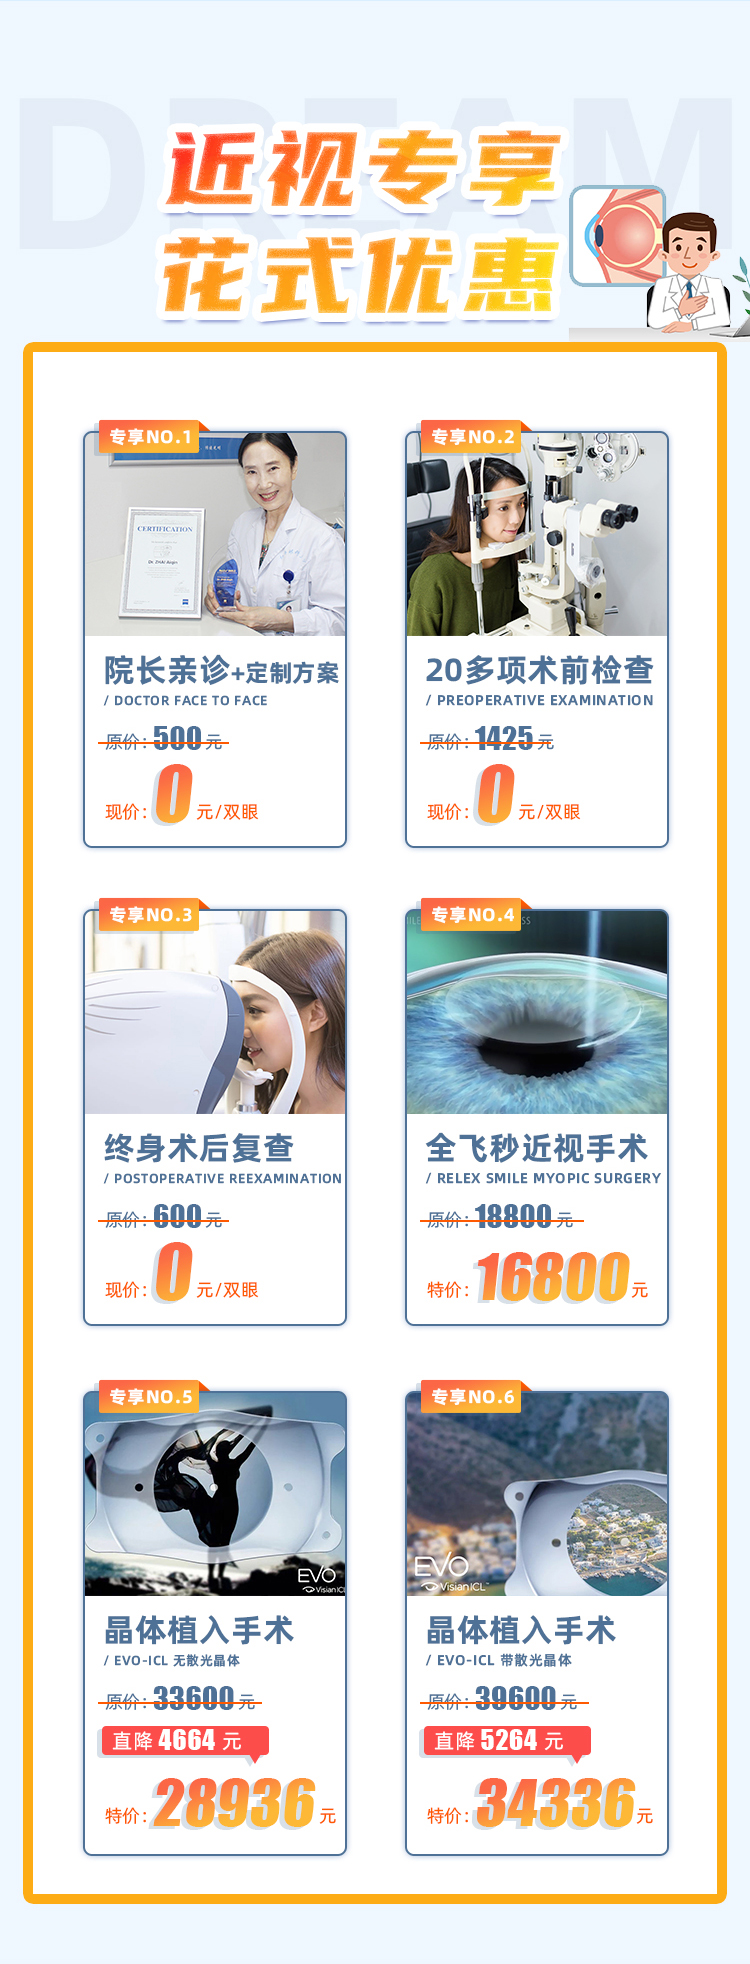 上海哪家医院做近视手术便宜？